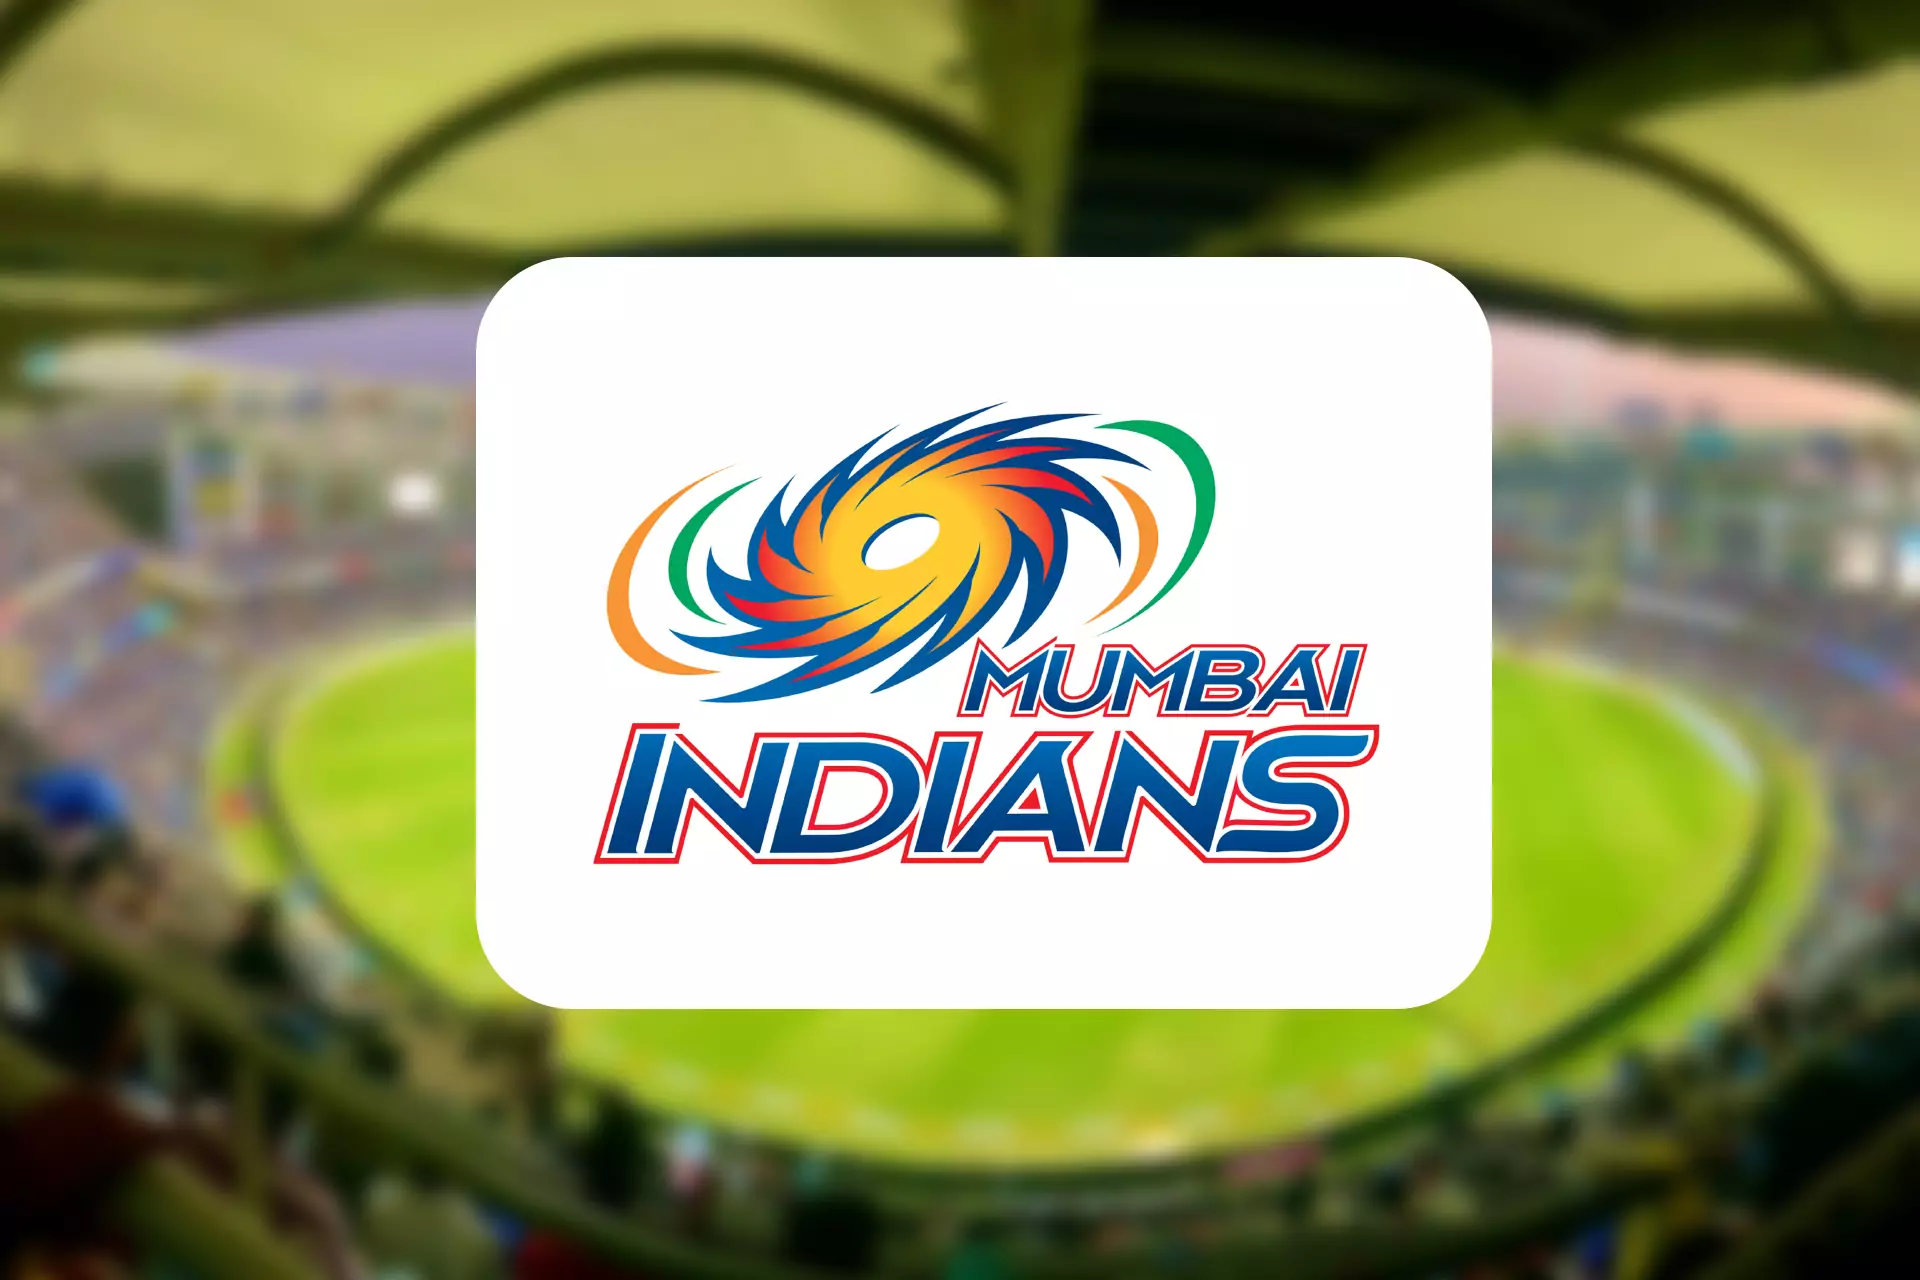 Mumbai Indians won the IPL Cup five times.